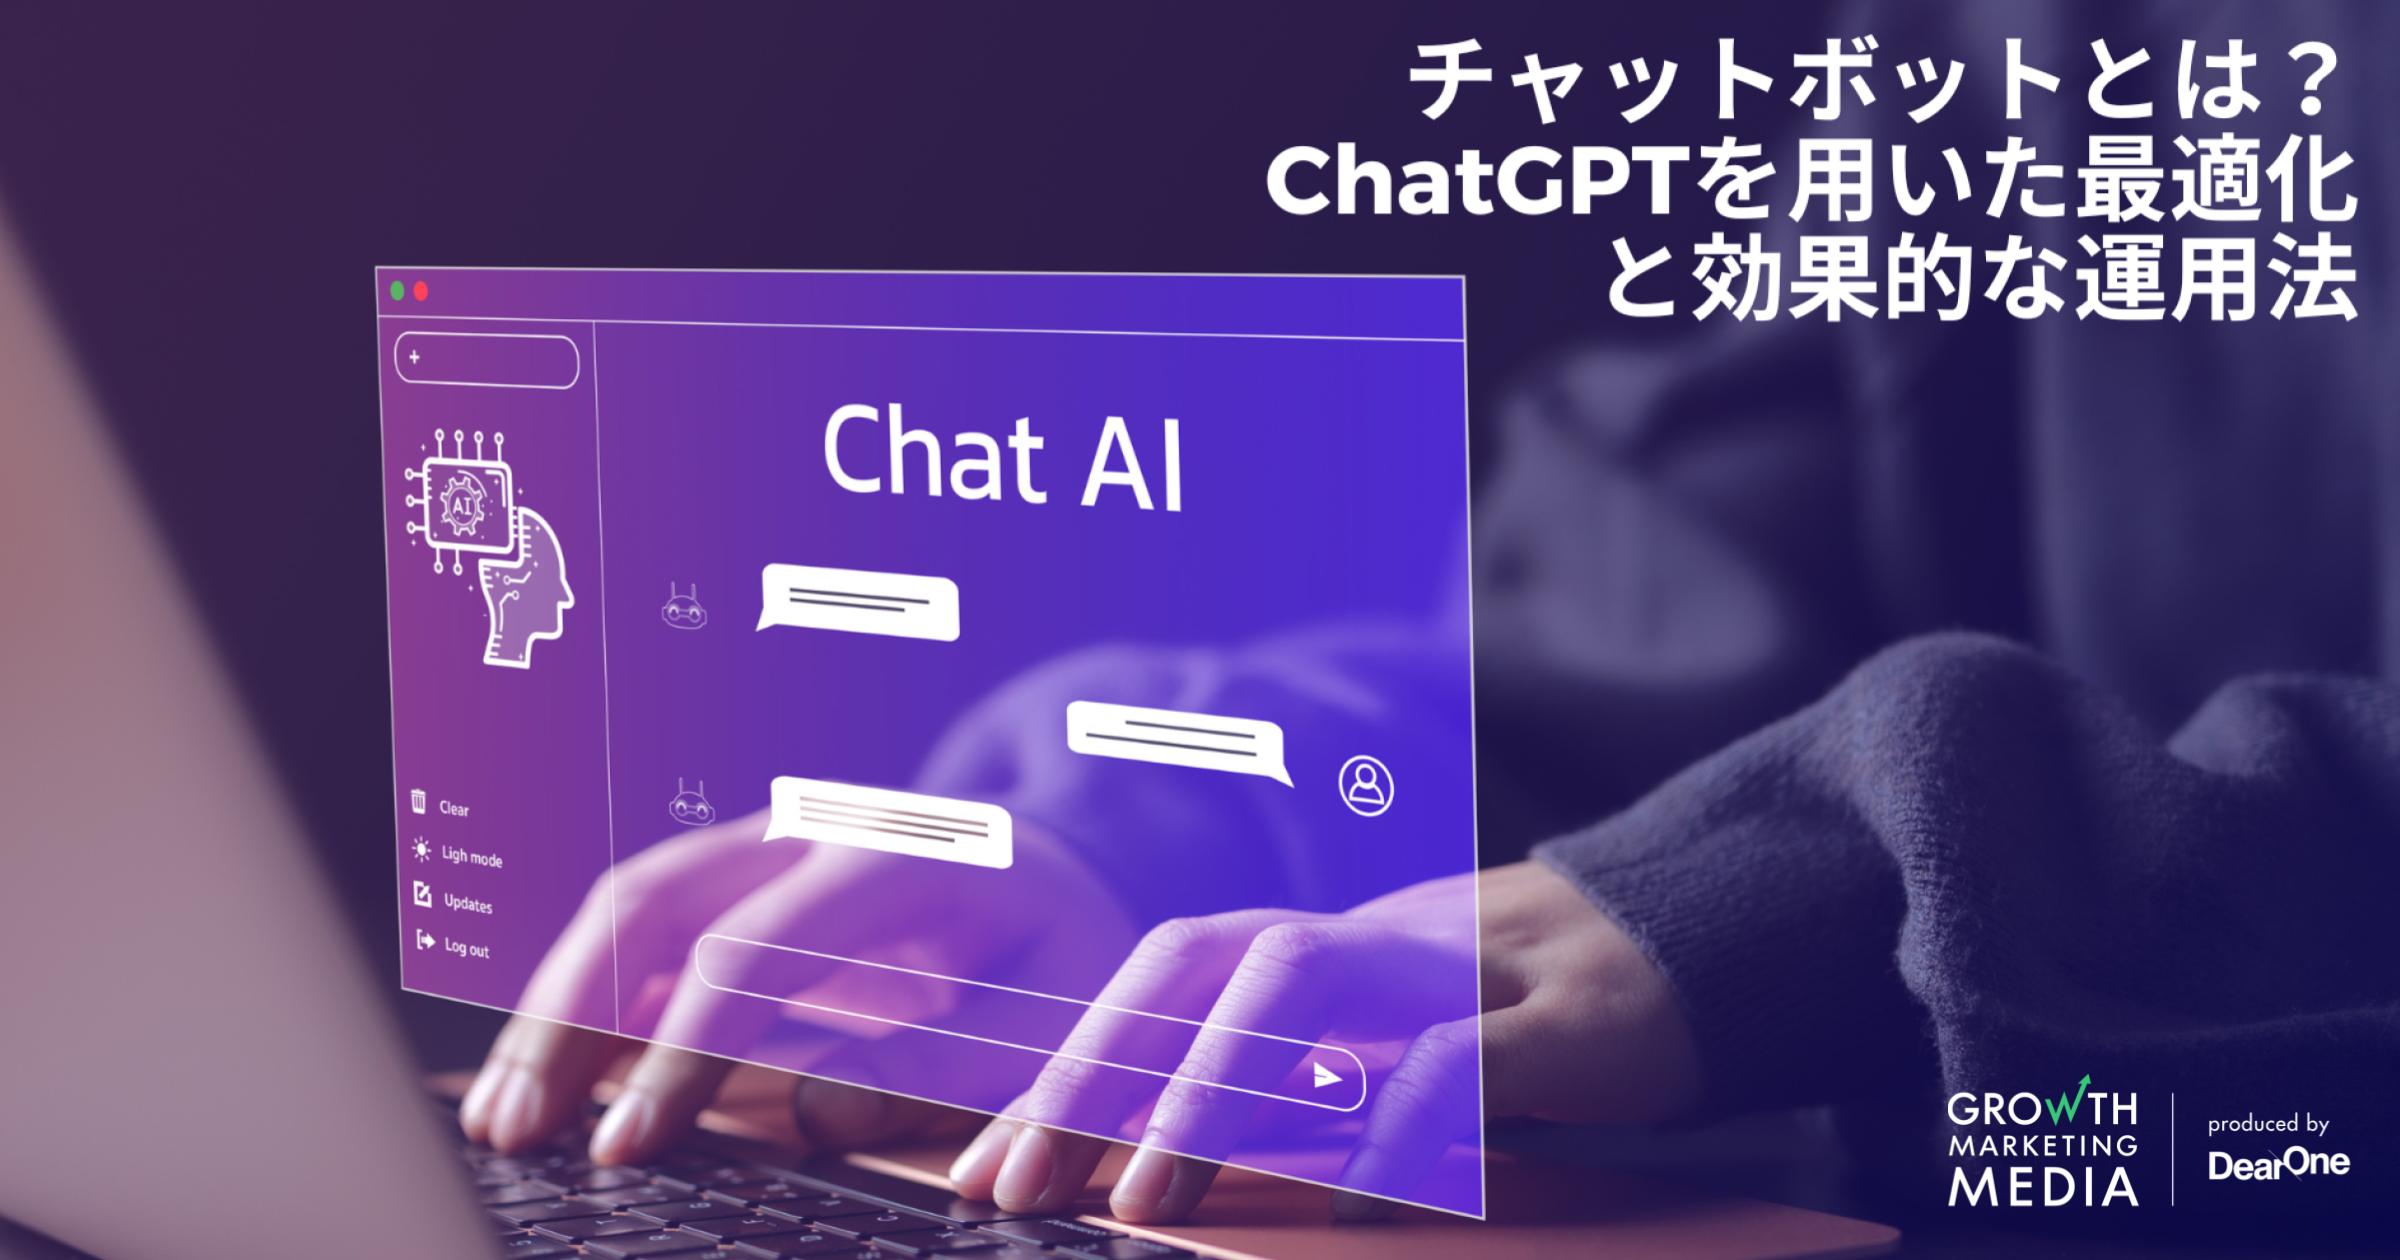 チャットボットとは？ChatGPTを用いた最適化と効果的な運用法